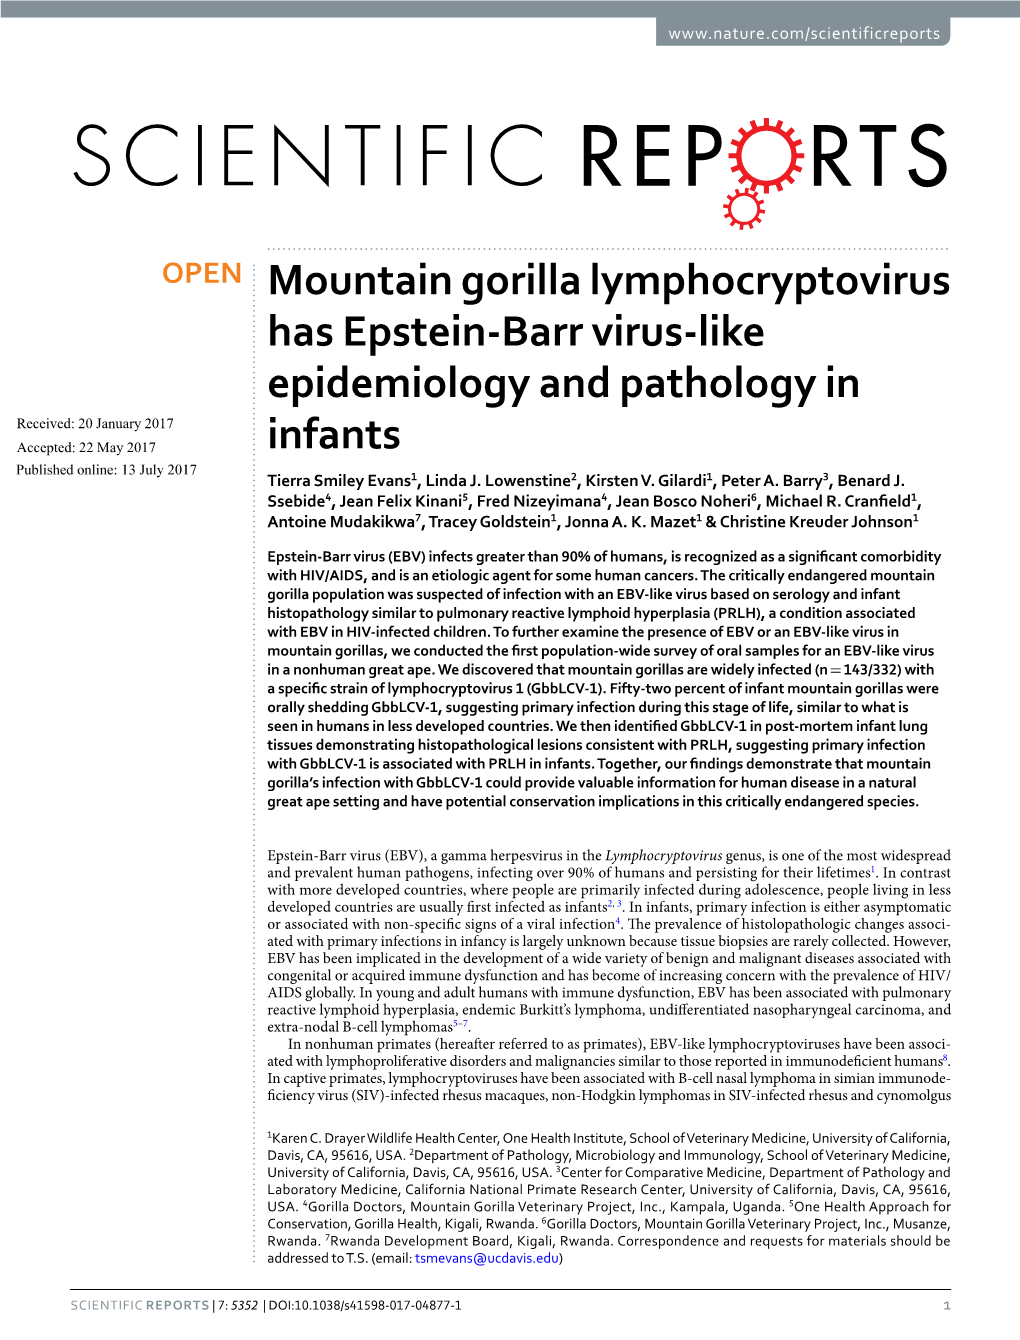 Mountain Gorilla Lymphocryptovirus Has Epstein-Barr Virus-Like